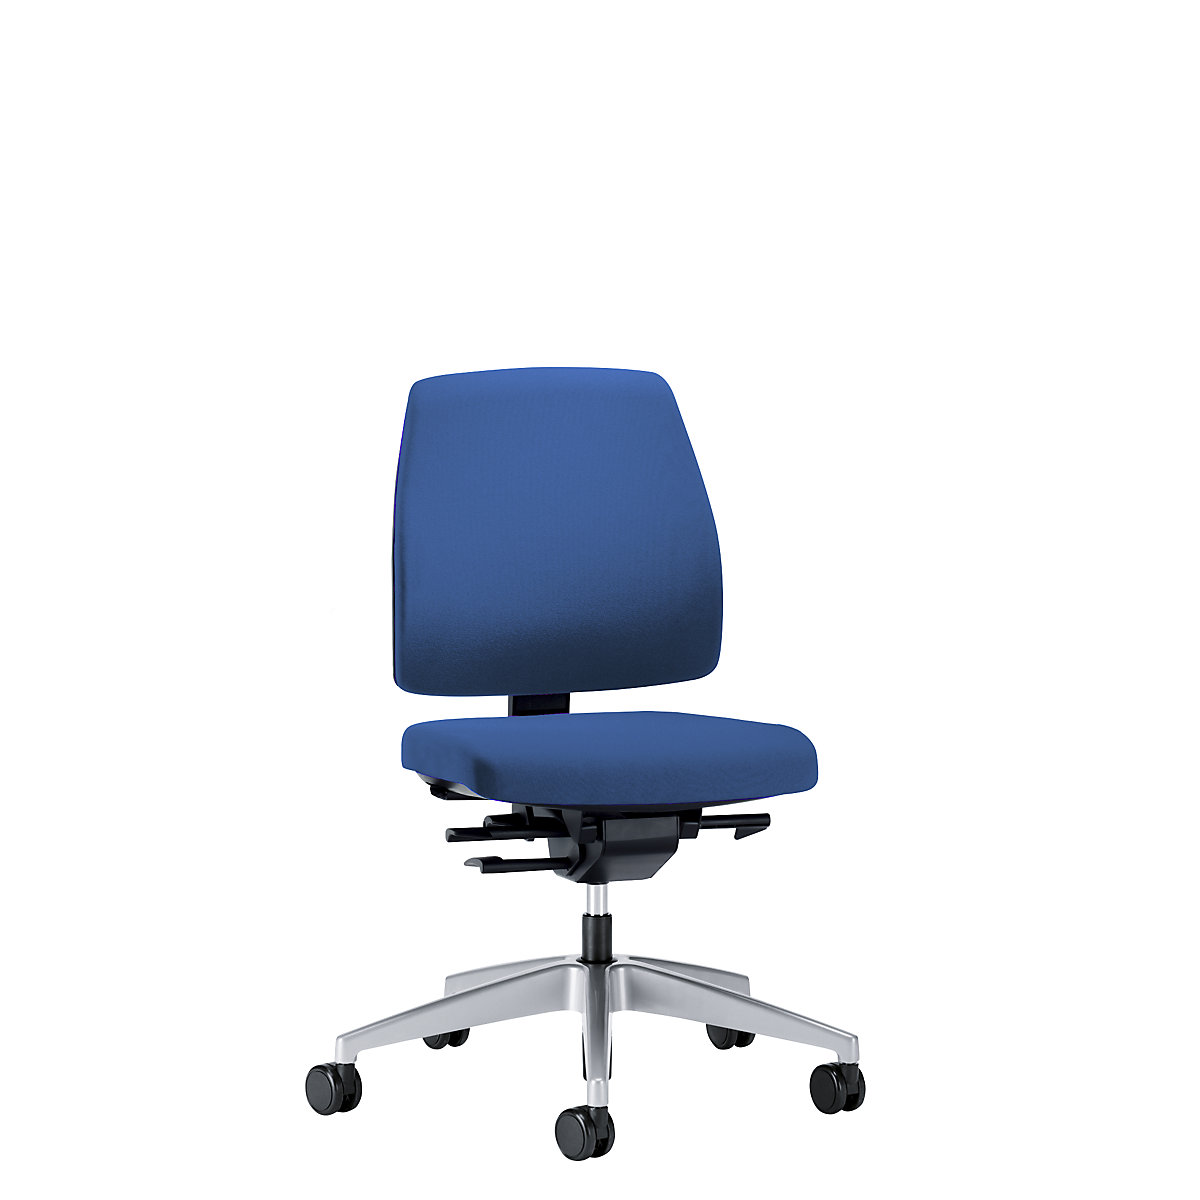 Cadeira giratória de escritório GOAL, altura do encosto 430 mm – interstuhl, armação prateada brilhante, com rodas duras, azul genciana, profundidade do assento 410 mm-1